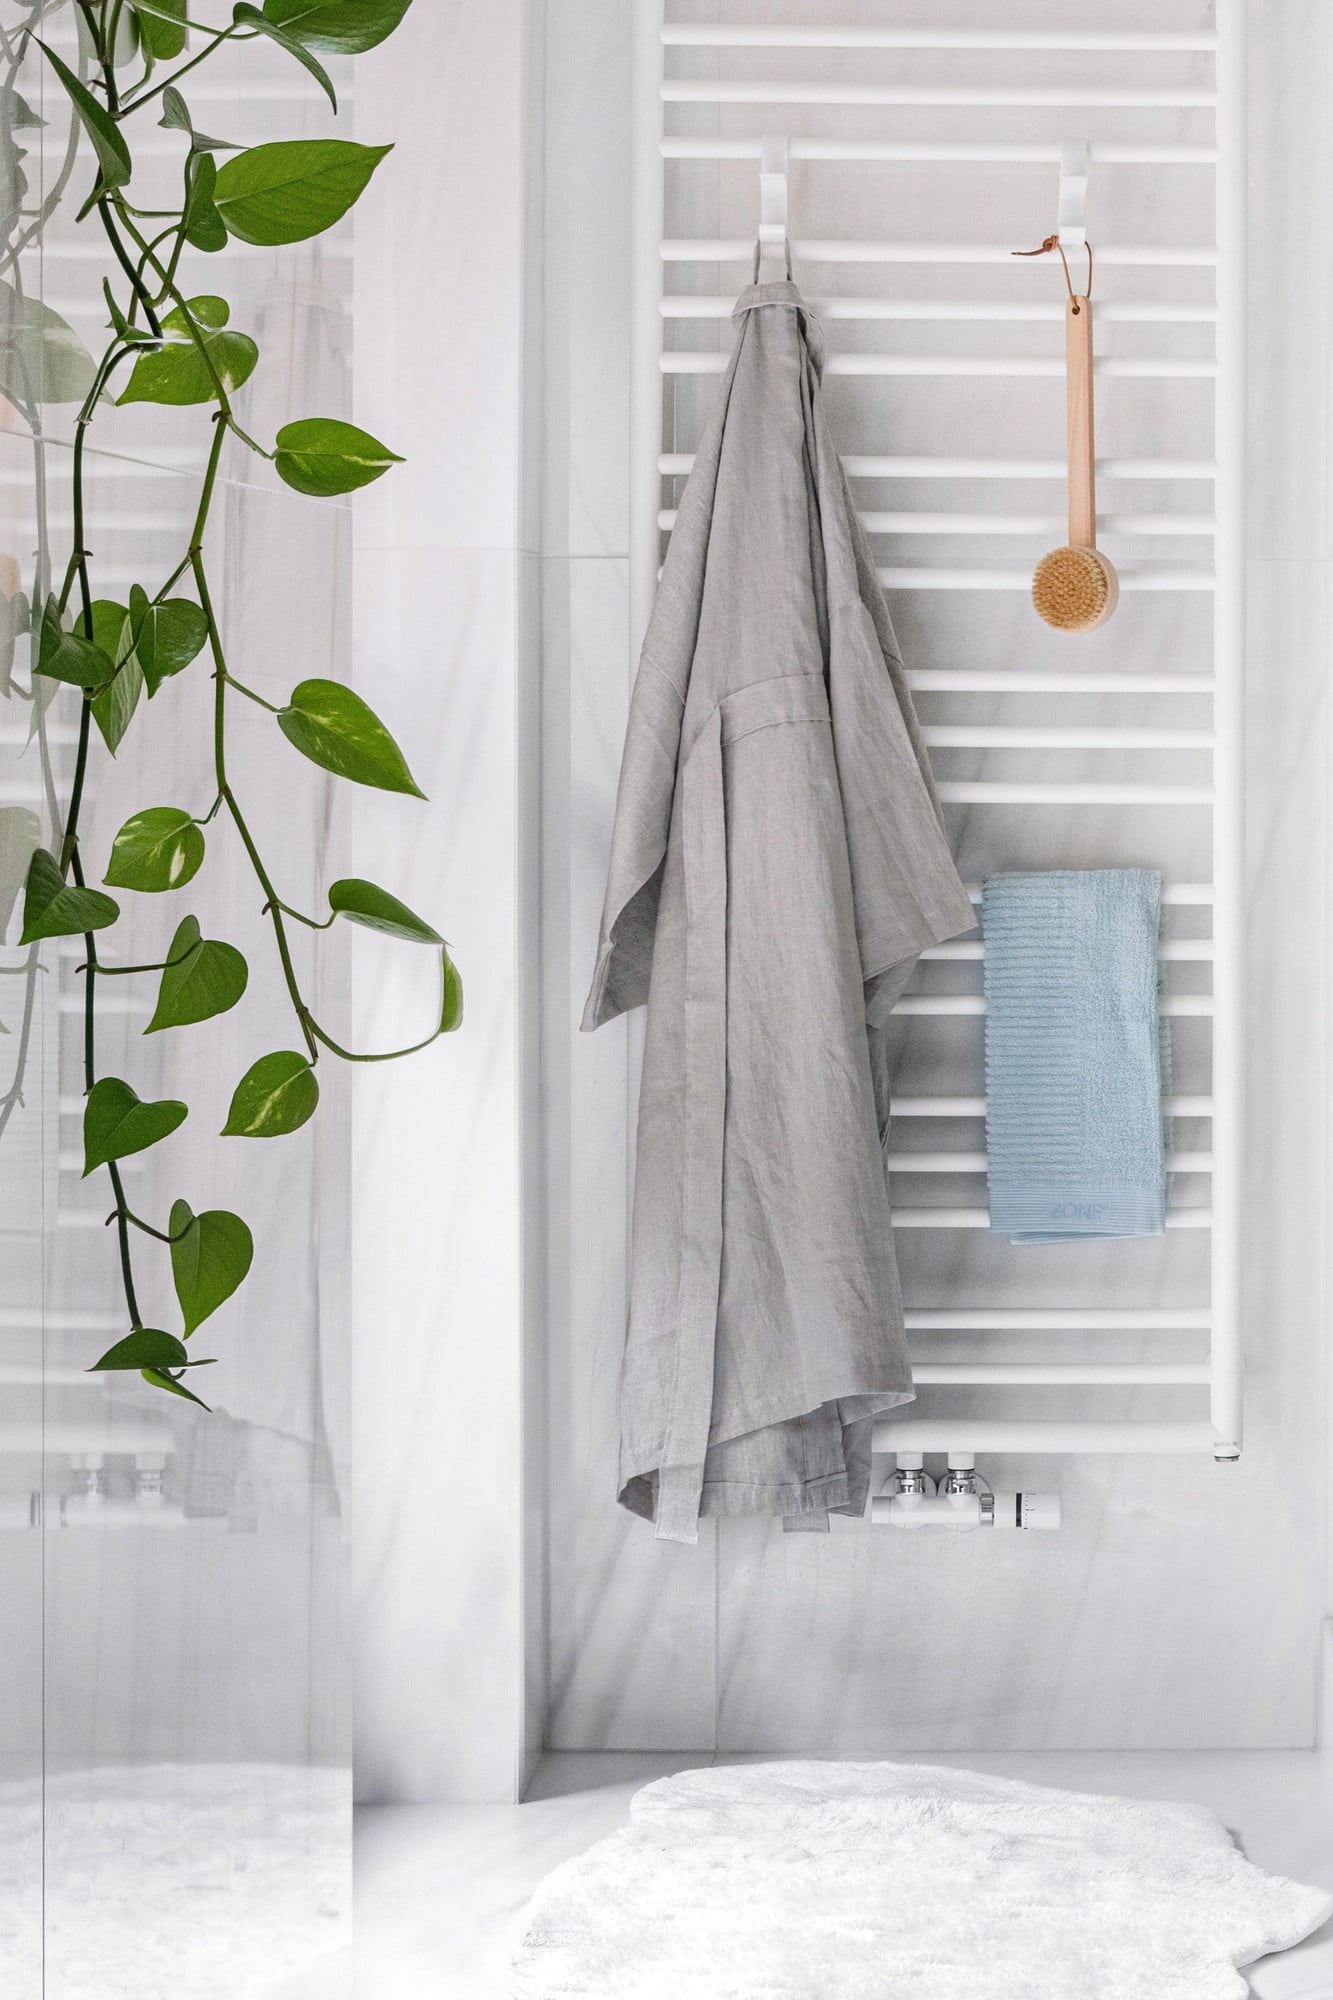 W łazience pojawiają się też naturalne materiały – lniany szlafrok i bambusowa szczotka. 